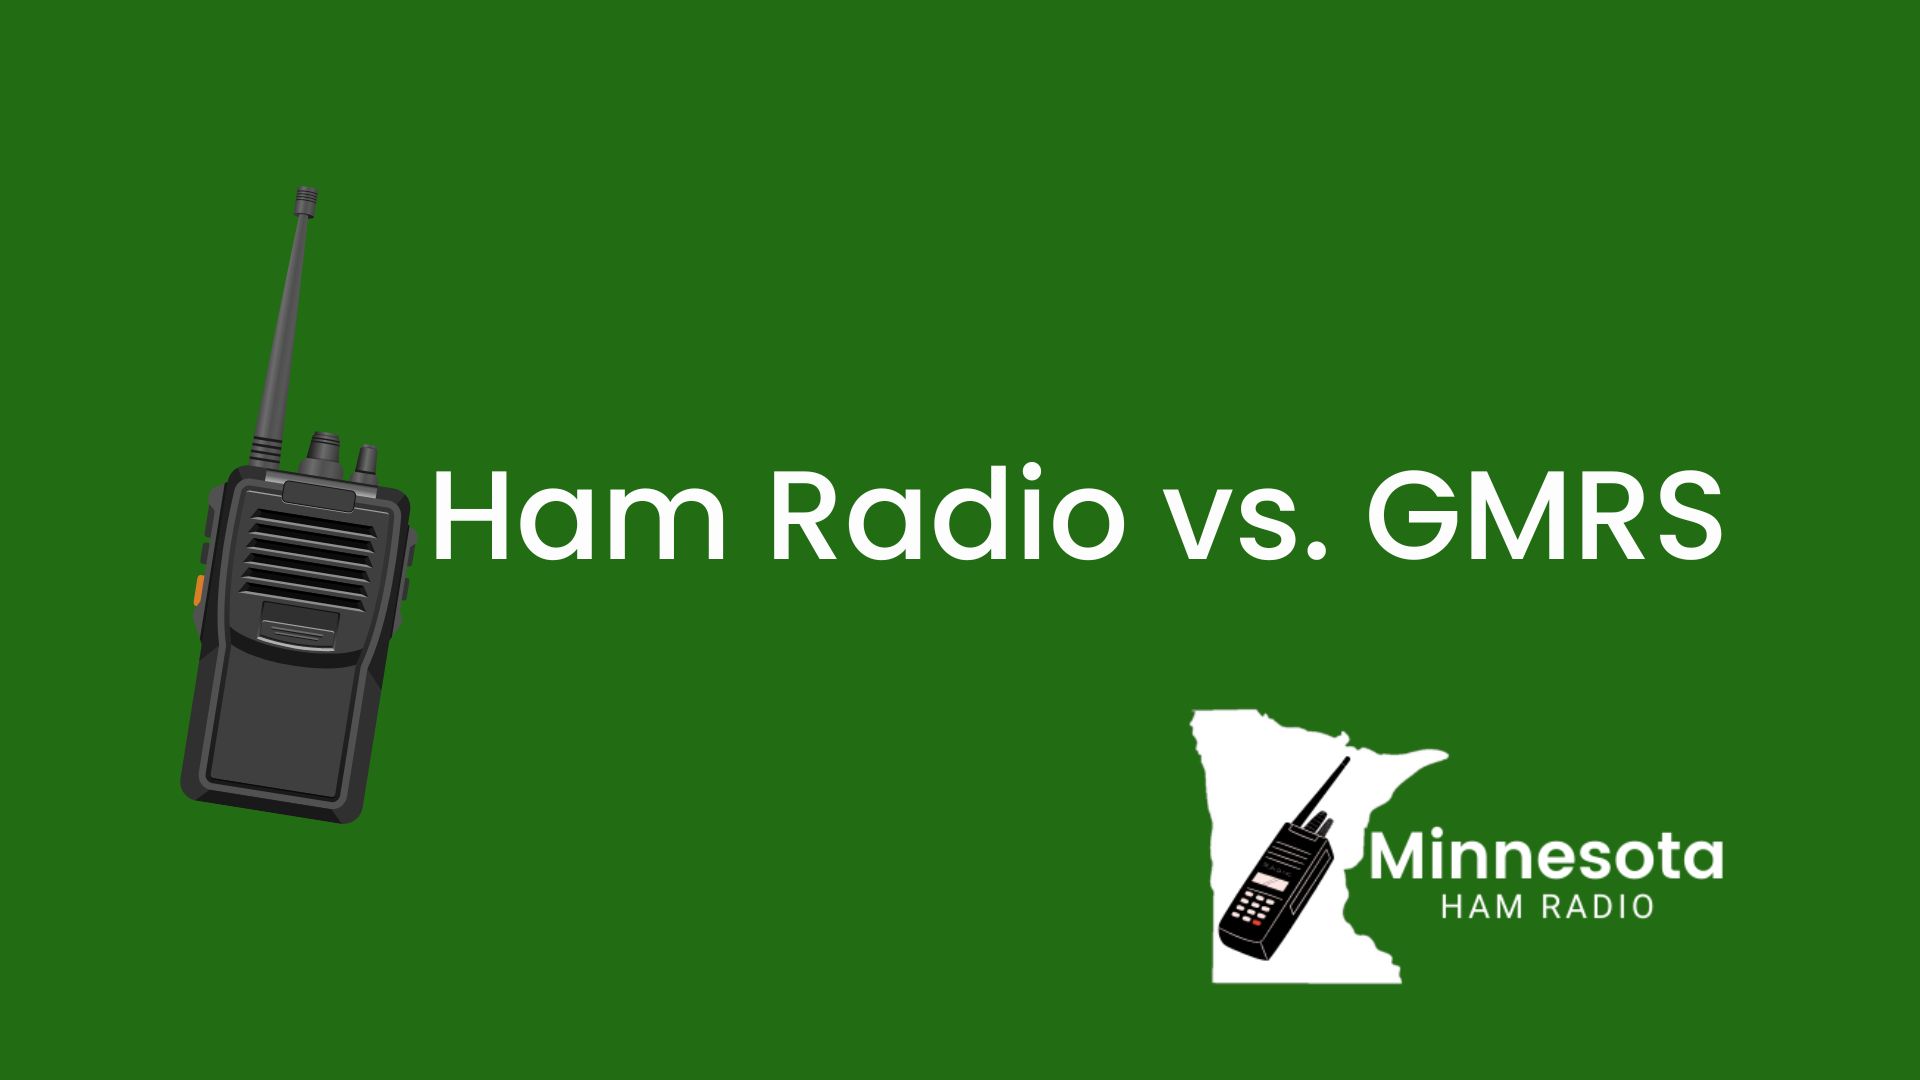 Ham radio vs GMRS